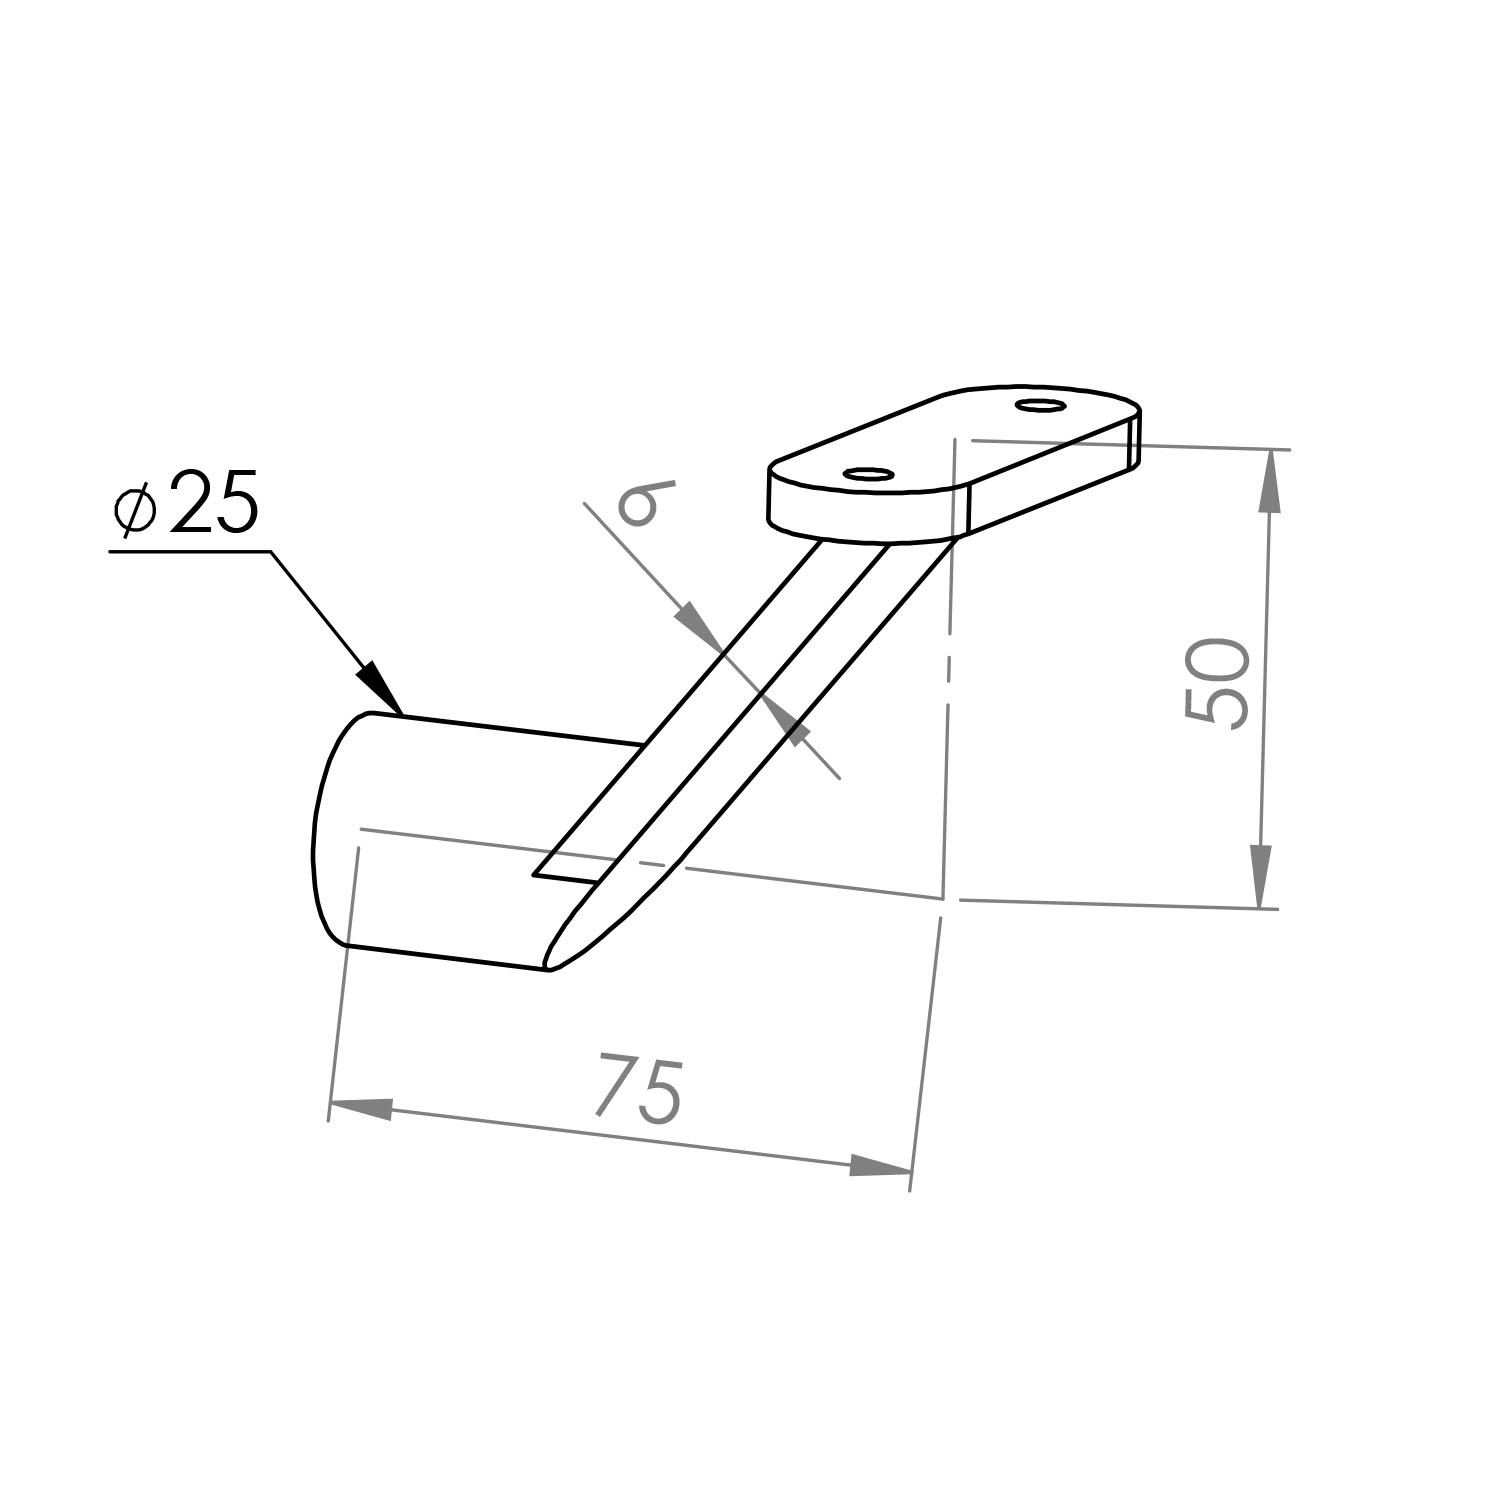  Handlauf Hammerschlag Optik beschichtet viereckig 40x40  Modell 7 - Eckige Treppengeländer - Treppenhandlauf mit grauem Hammerschlag Pulverbeschichtung